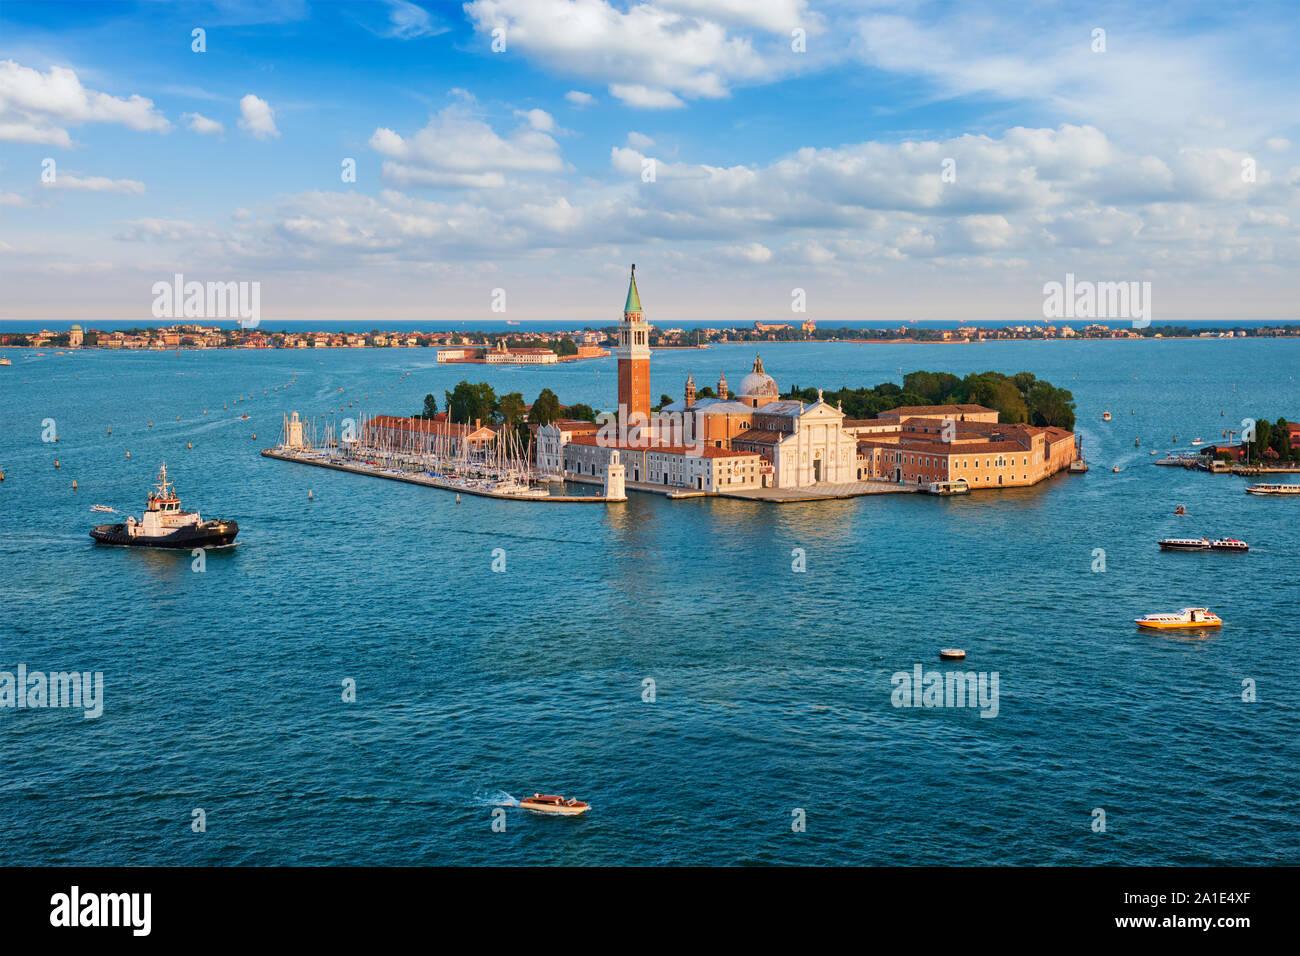 Aerial view of Venice lagoon with boats and San Giorgio di Maggiore church. Venice, Italy Stock Photo